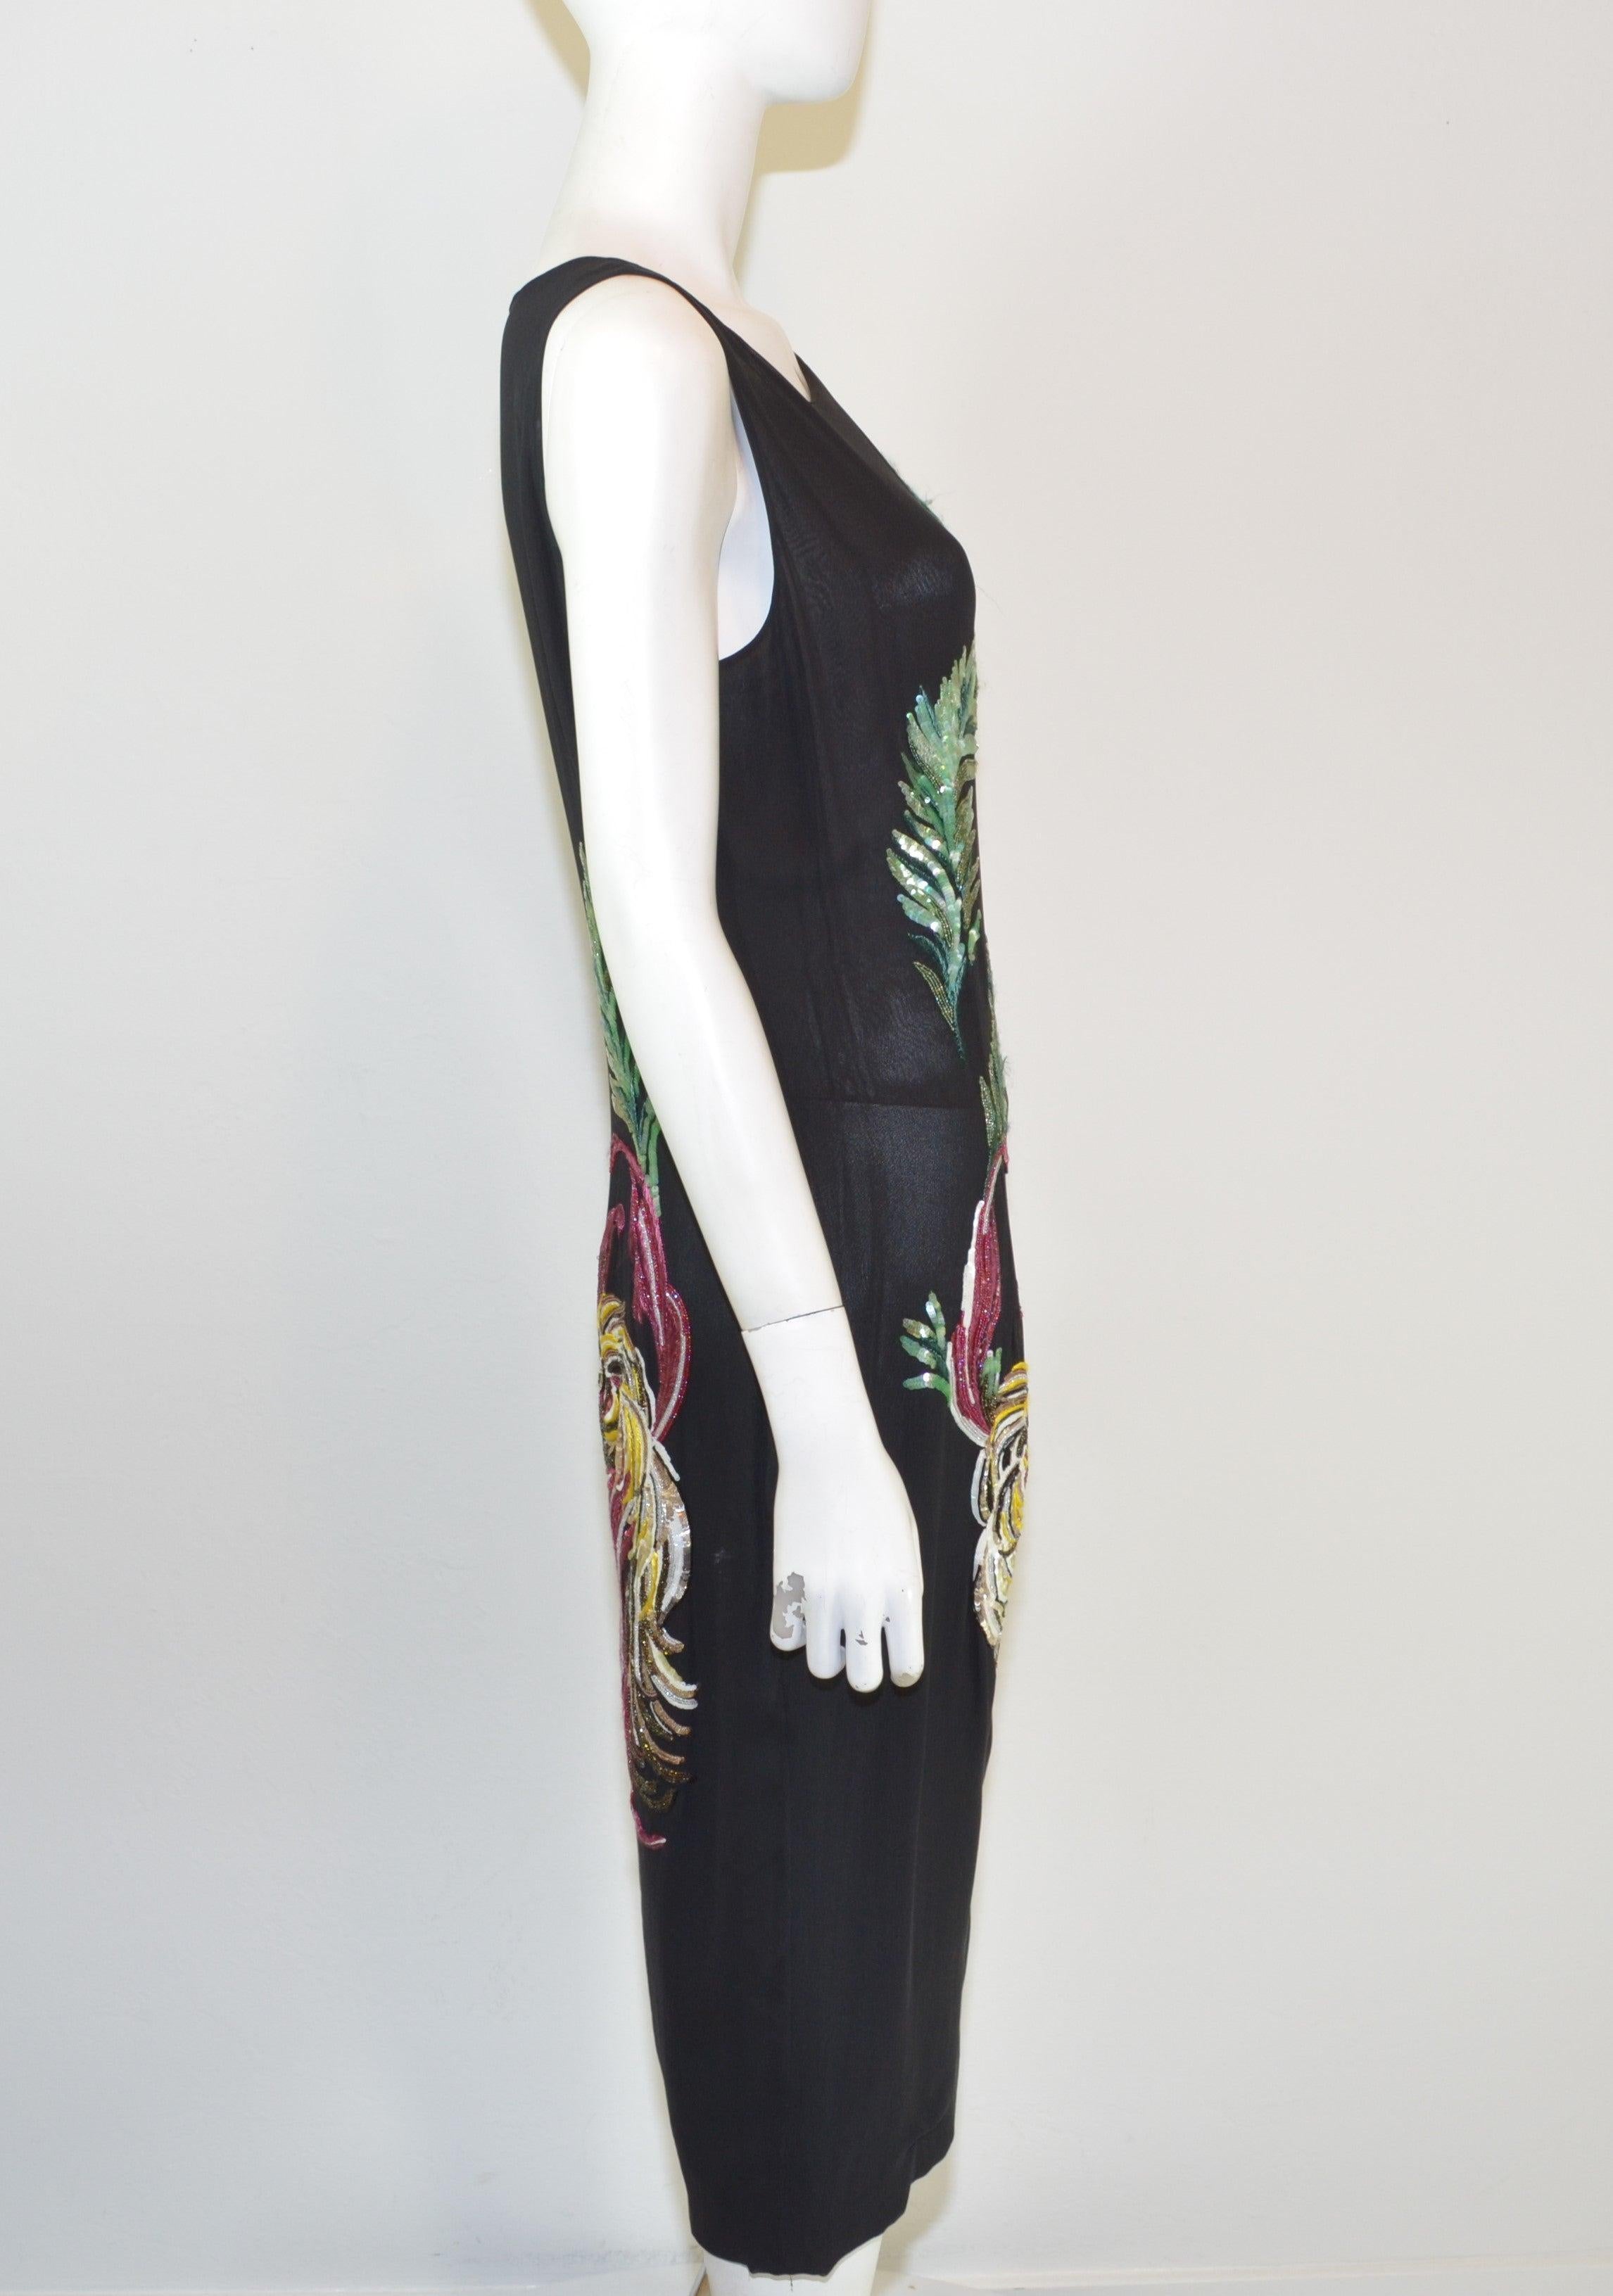 Robe Givenchy Couture conçue par Alexander McQueen pour sa Collectional automne/hiver 1997. Magnifique robe en soie noire avec des paillettes multicolores brodées sur l'ensemble du corps dans un motif d'oiseaux et de feuilles. La robe est